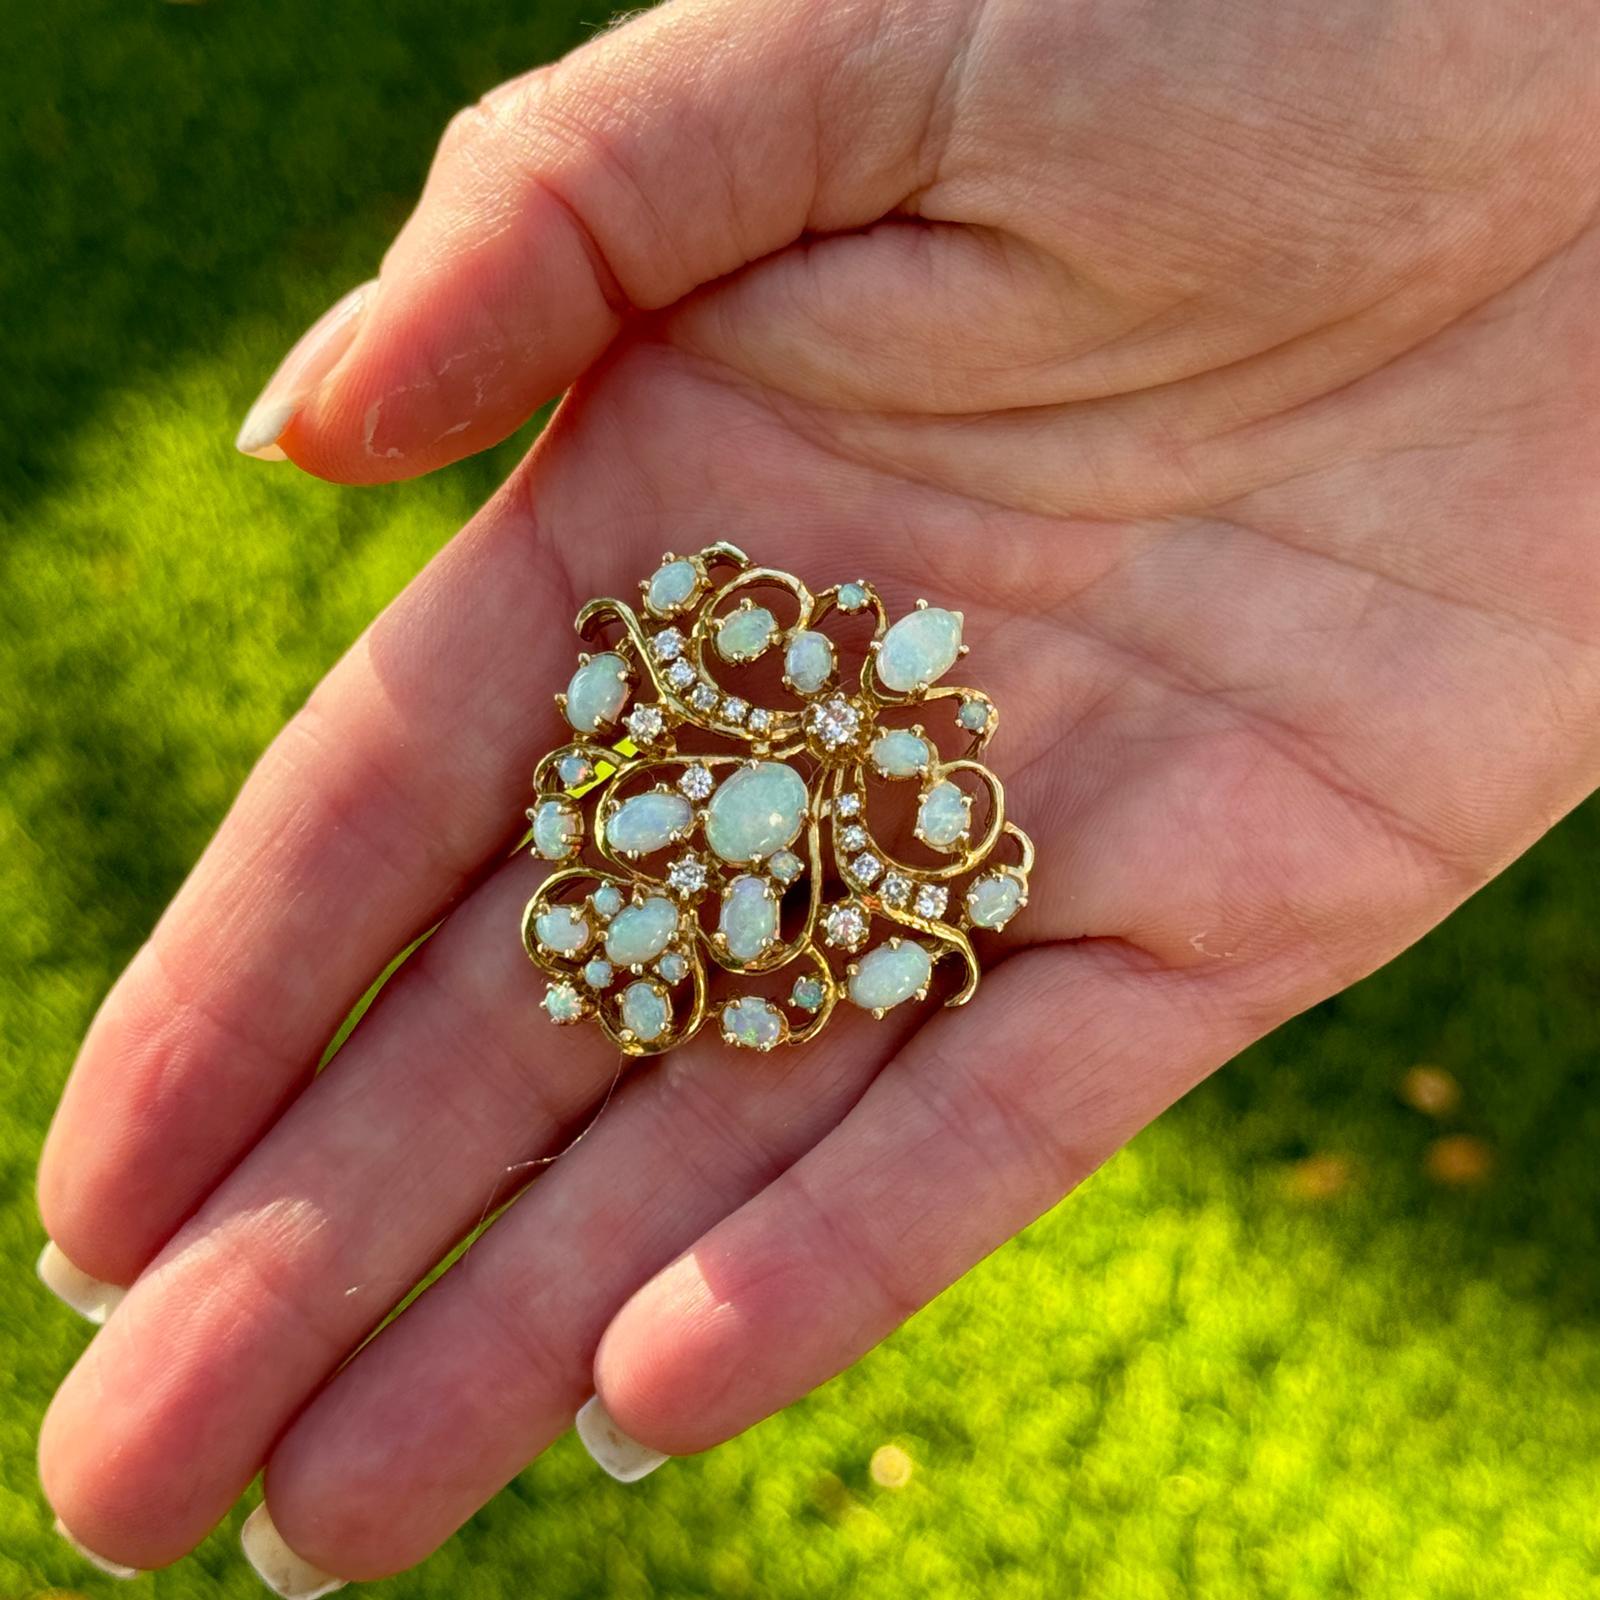 Eine Diamant-Opal-Anhänger-Brosche aus den 1950er Jahren versprüht Vintage-Charme und Eleganz, die für das Schmuckdesign der Jahrhundertmitte charakteristisch sind. Die Brosche ist aus 14-karätigem Gelbgold gefertigt, das aufgrund seiner Wärme und